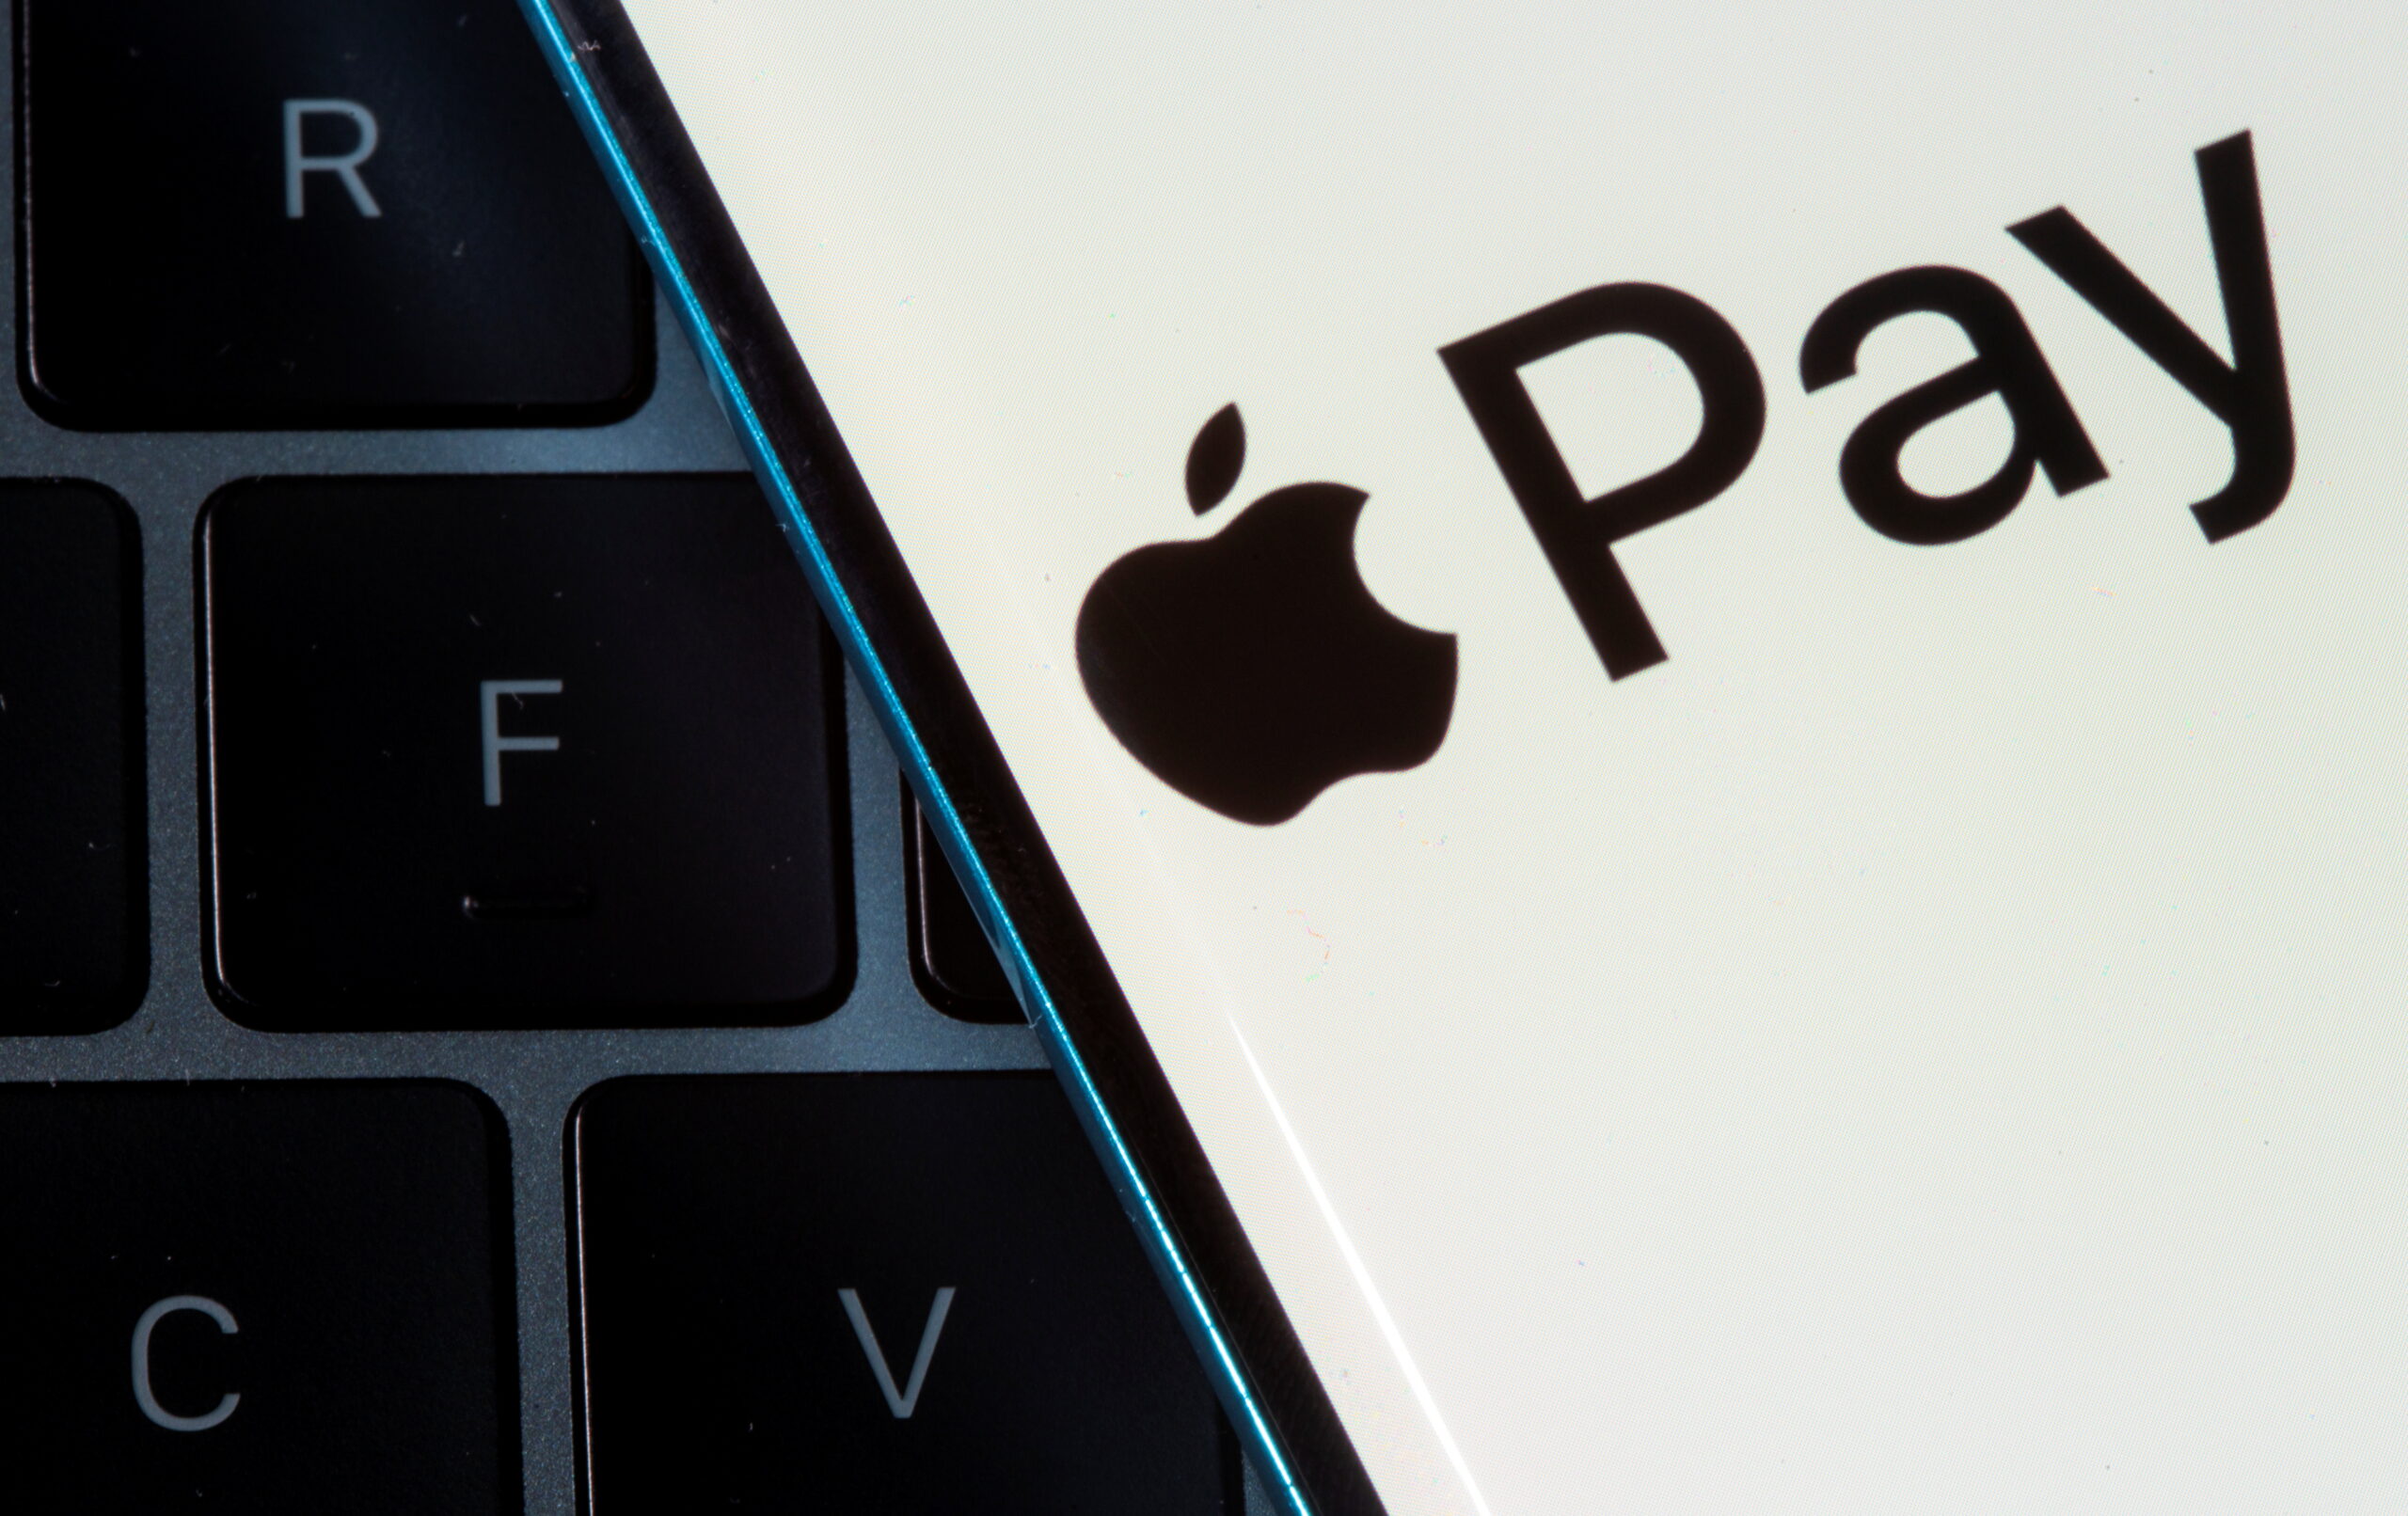 Apple Pay thu lợi bất hợp pháp bằng cách ngăn chặn các khoản thanh toán không tiếp xúc, cáo buộc vụ kiện